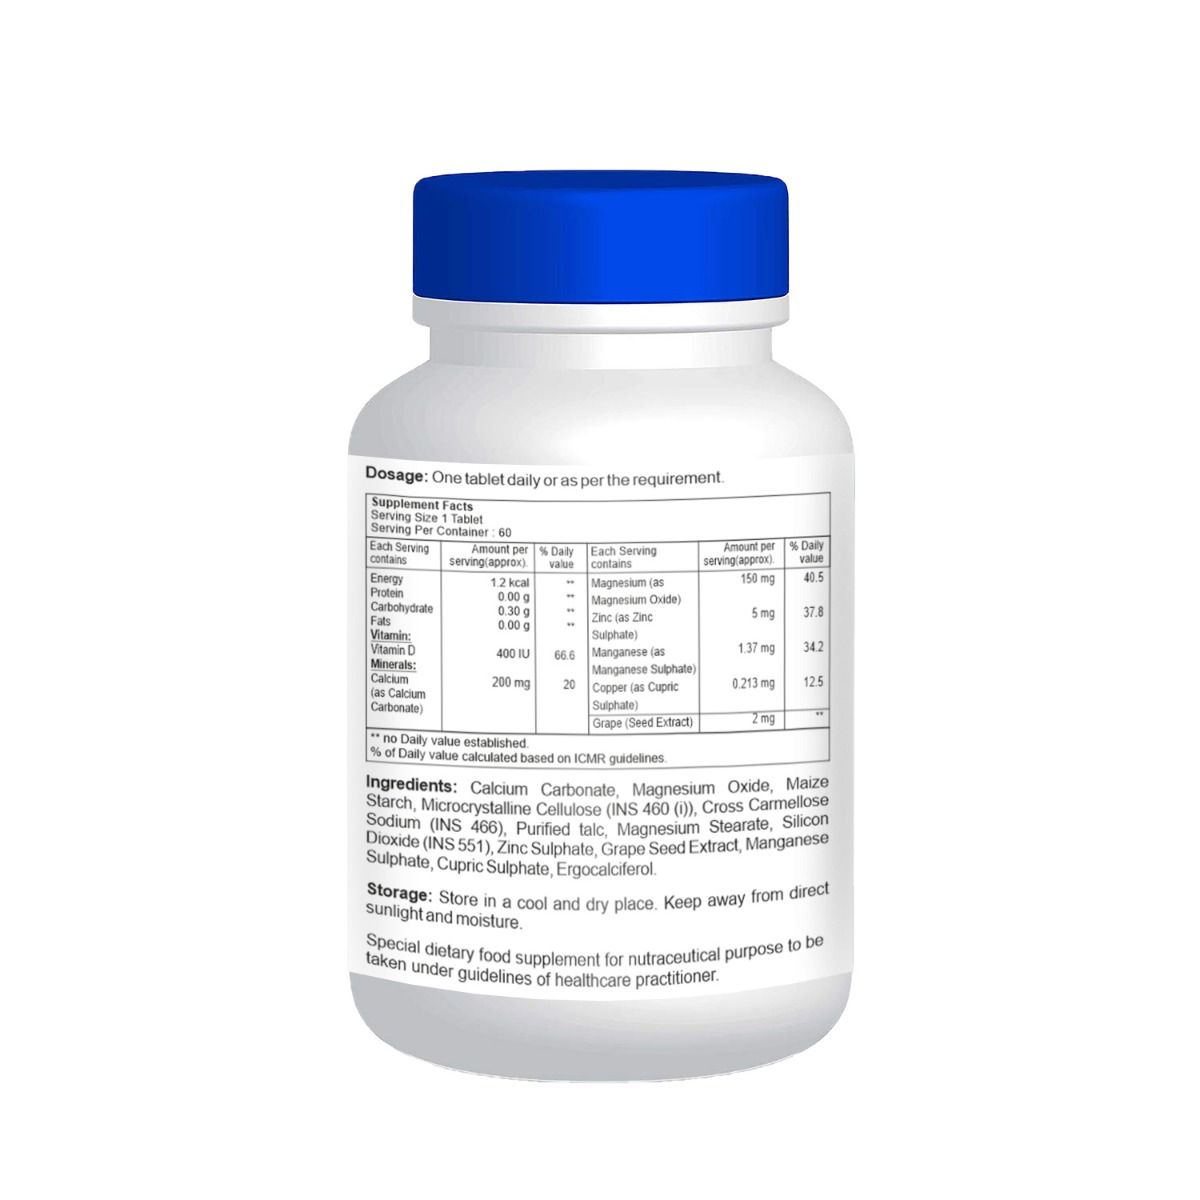 Healthvit Calvitan-CDM Calcium + Vitamin D + Magnesium - 60 Tablets, Pack of 1 